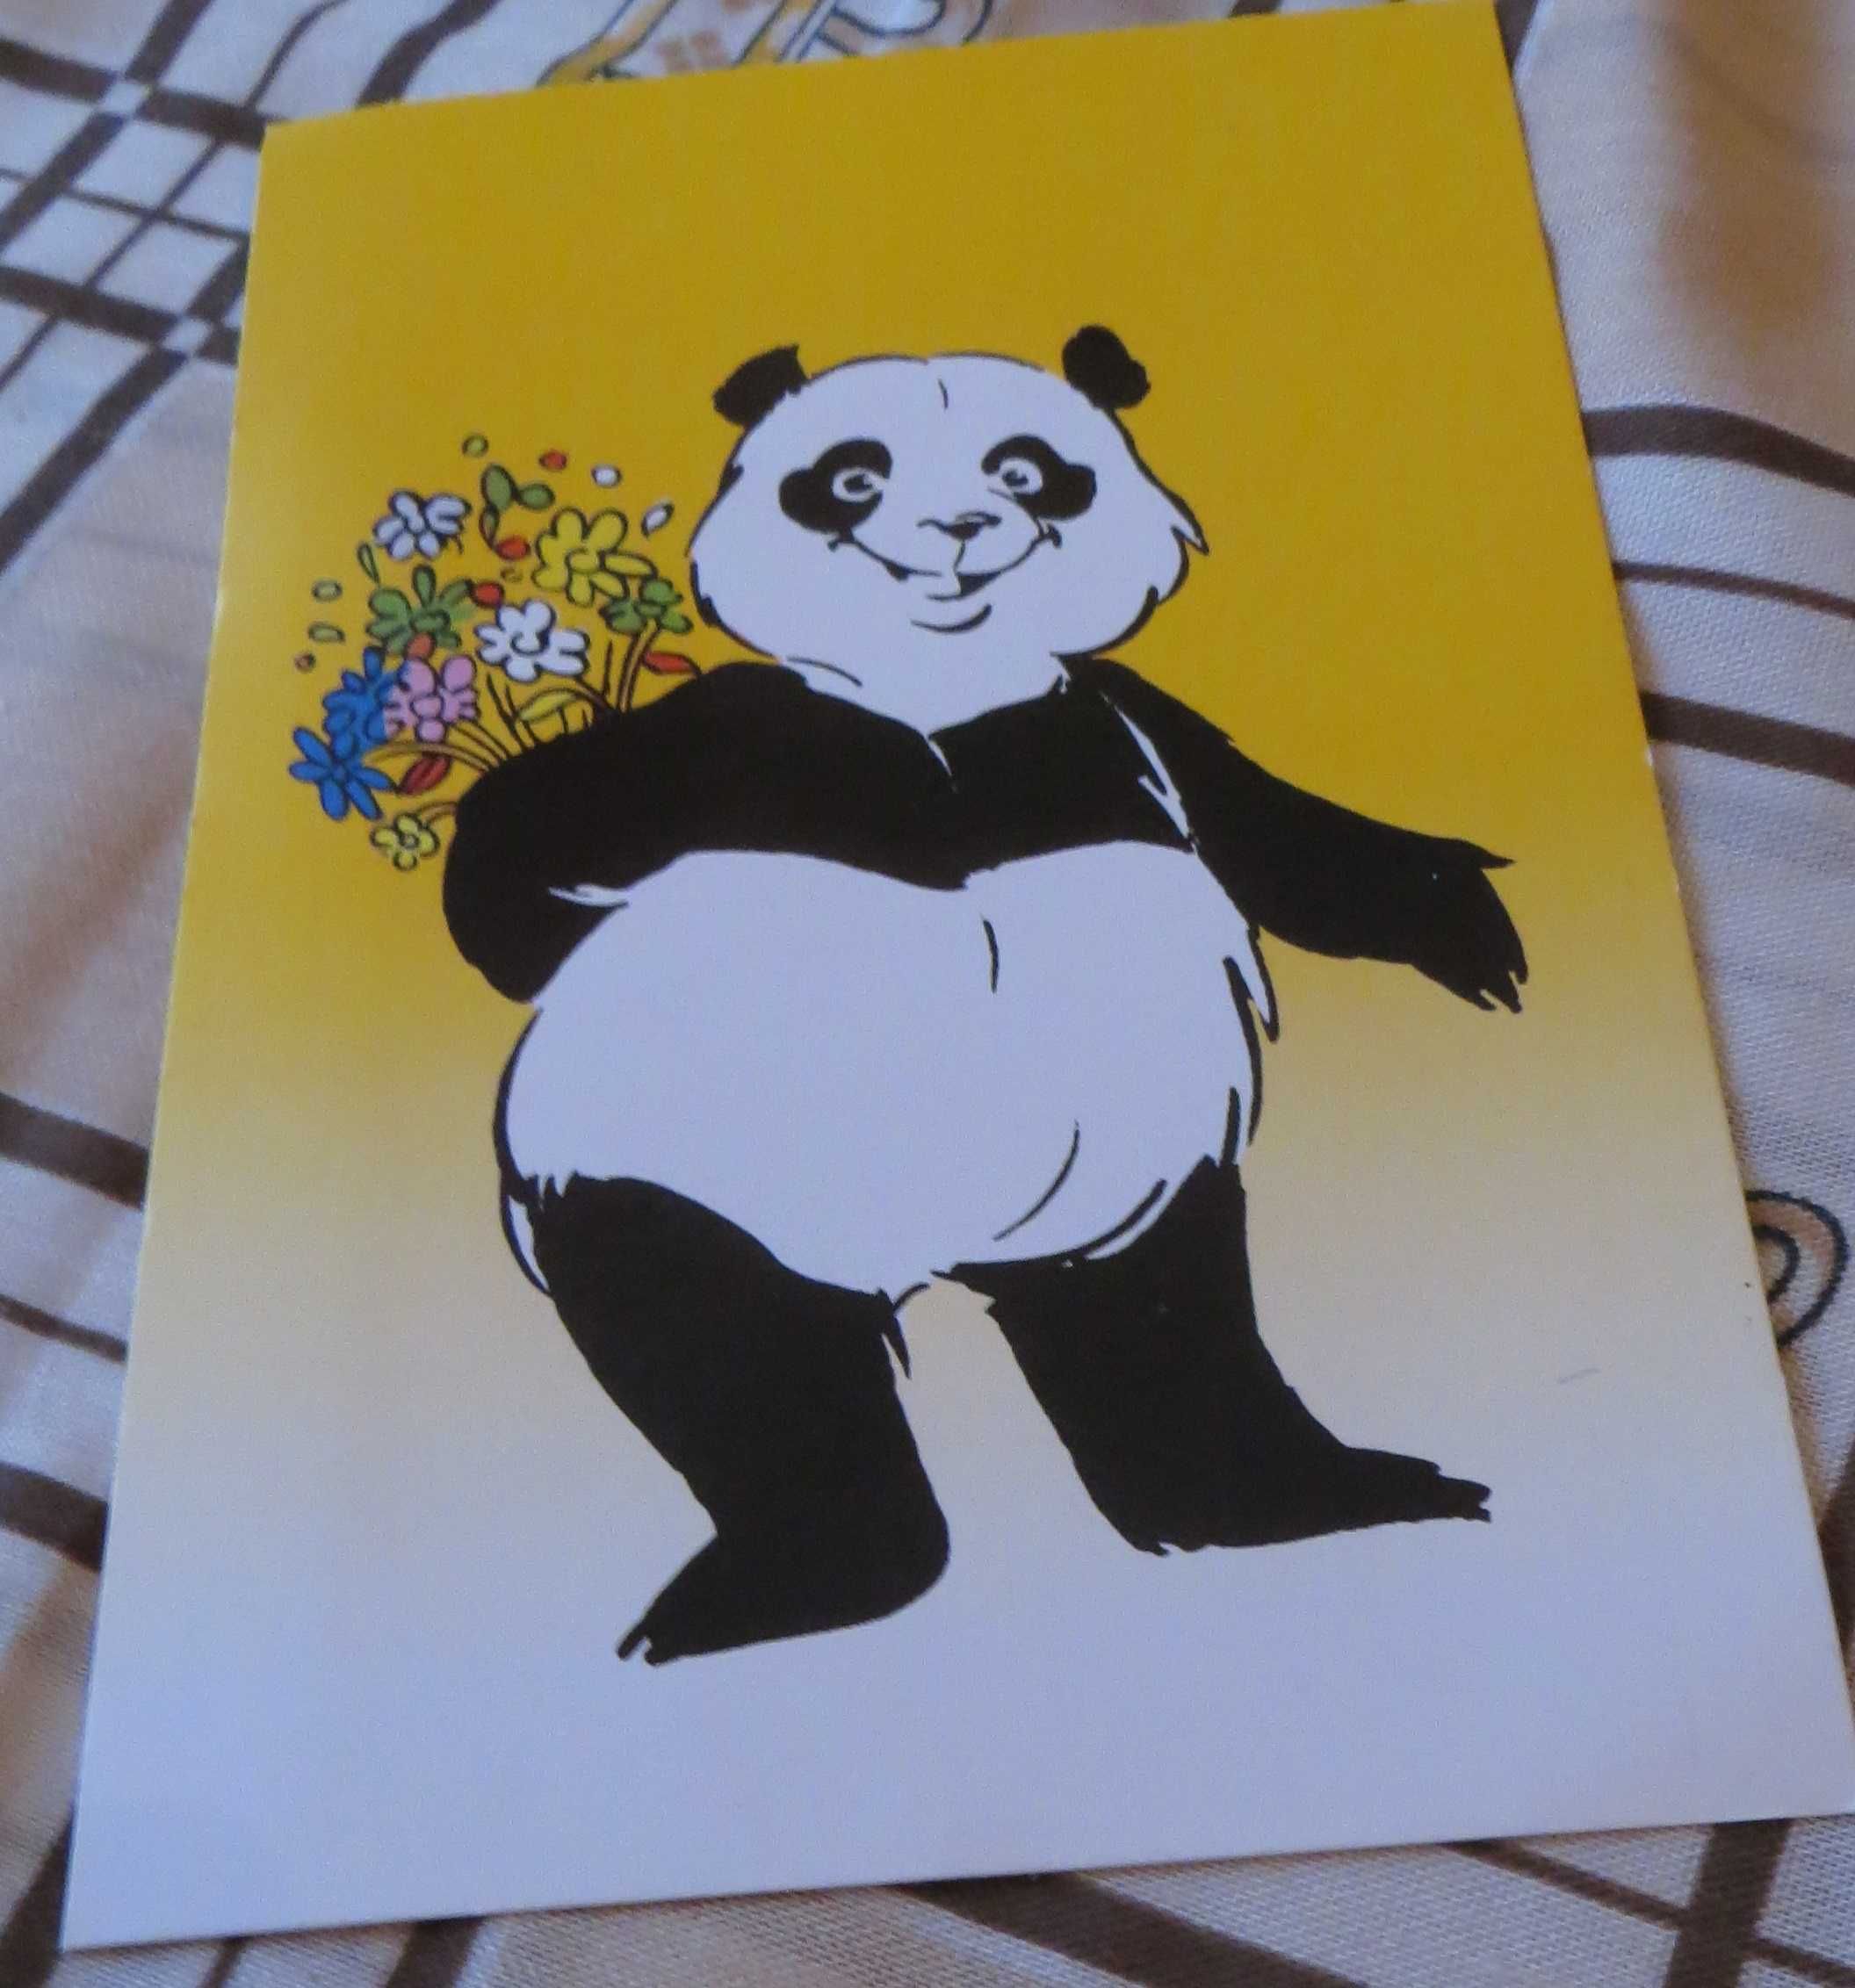 Passeio C/ Panda Postal mensagem "Os Amigos são para as oportunidades"